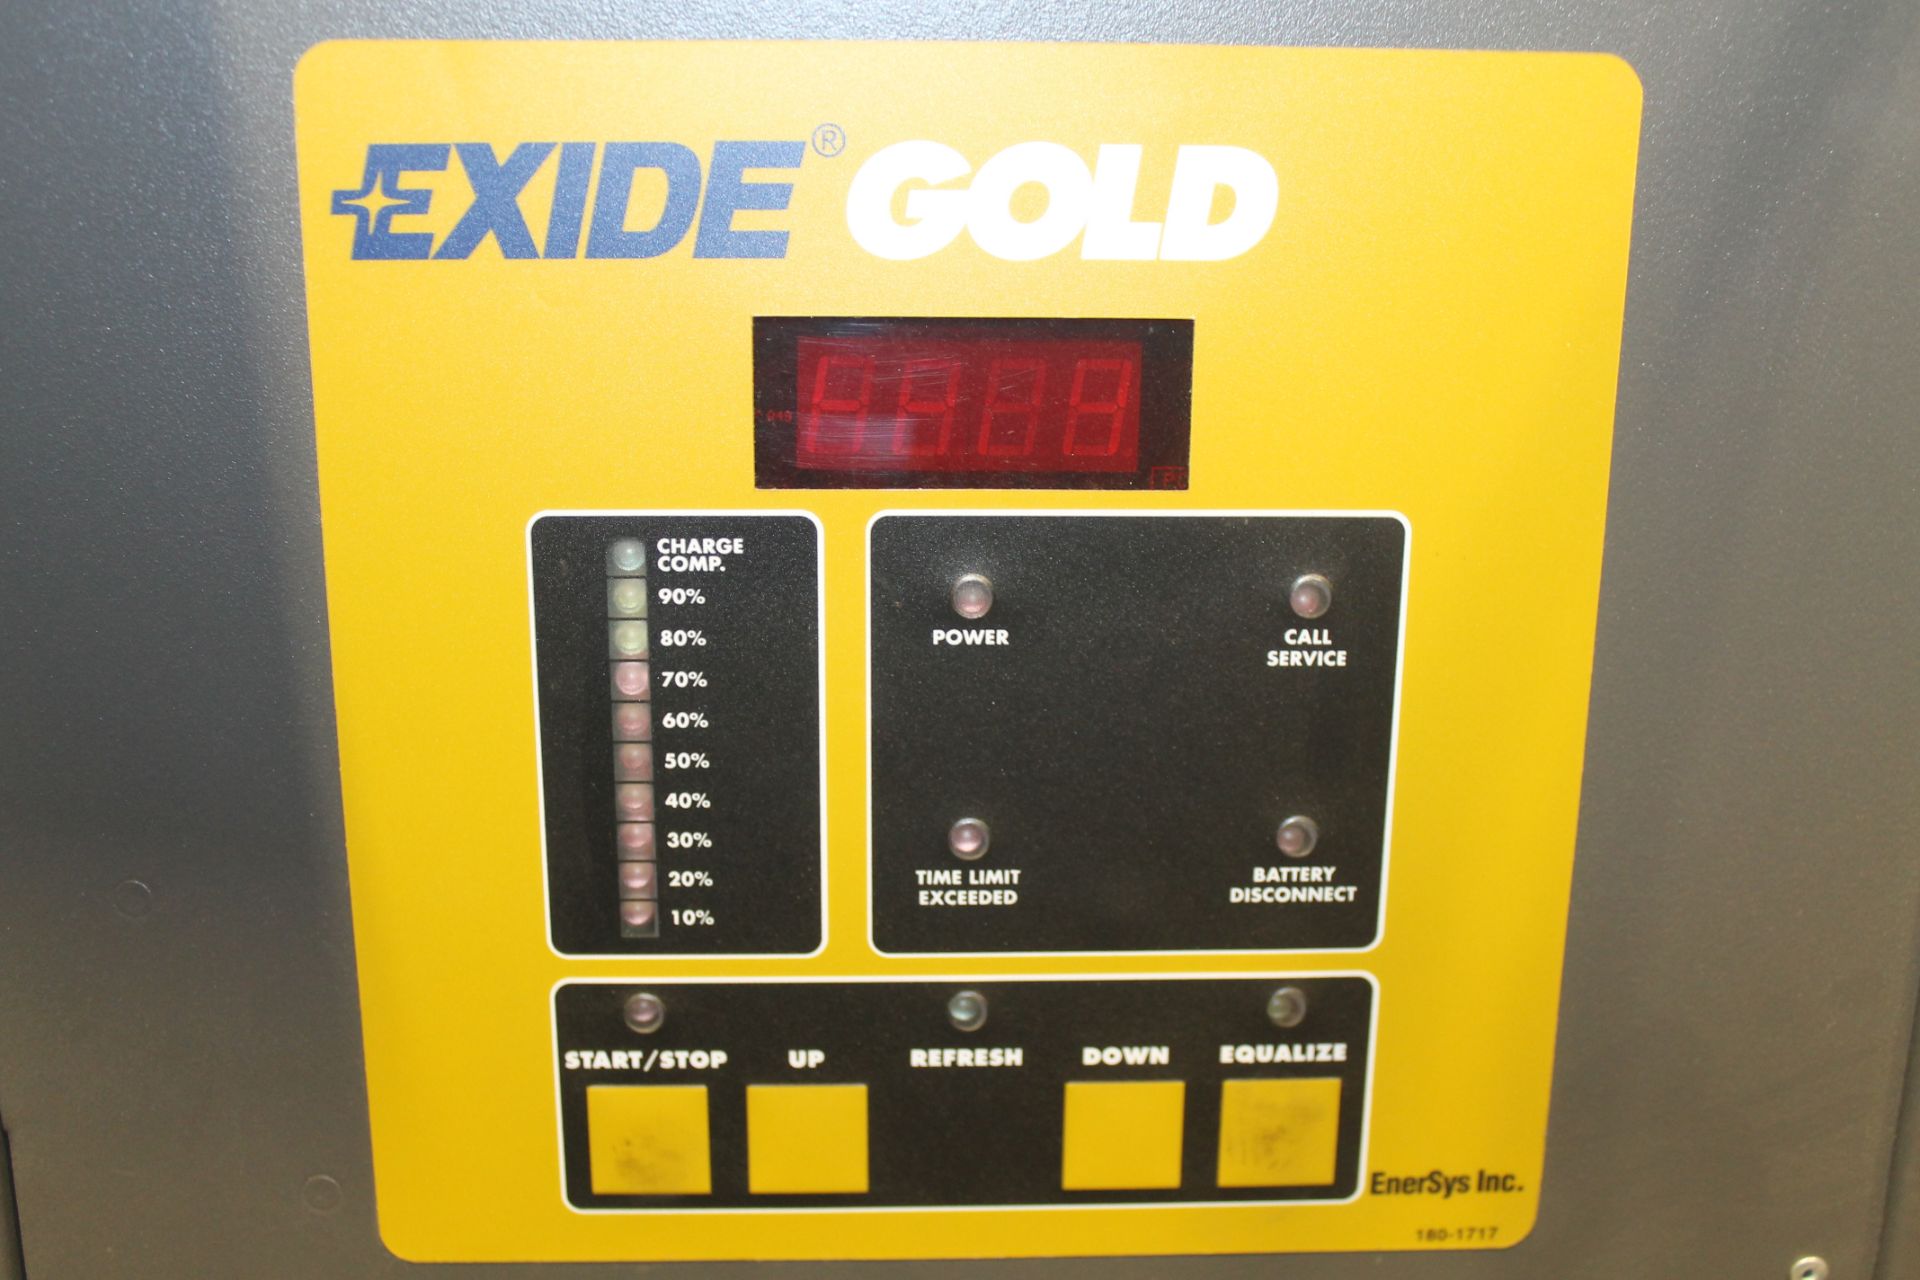 EXIDE GOLD 24V ELECTRIC FORKLIFT BATTERY CHARGER, - Image 2 of 4